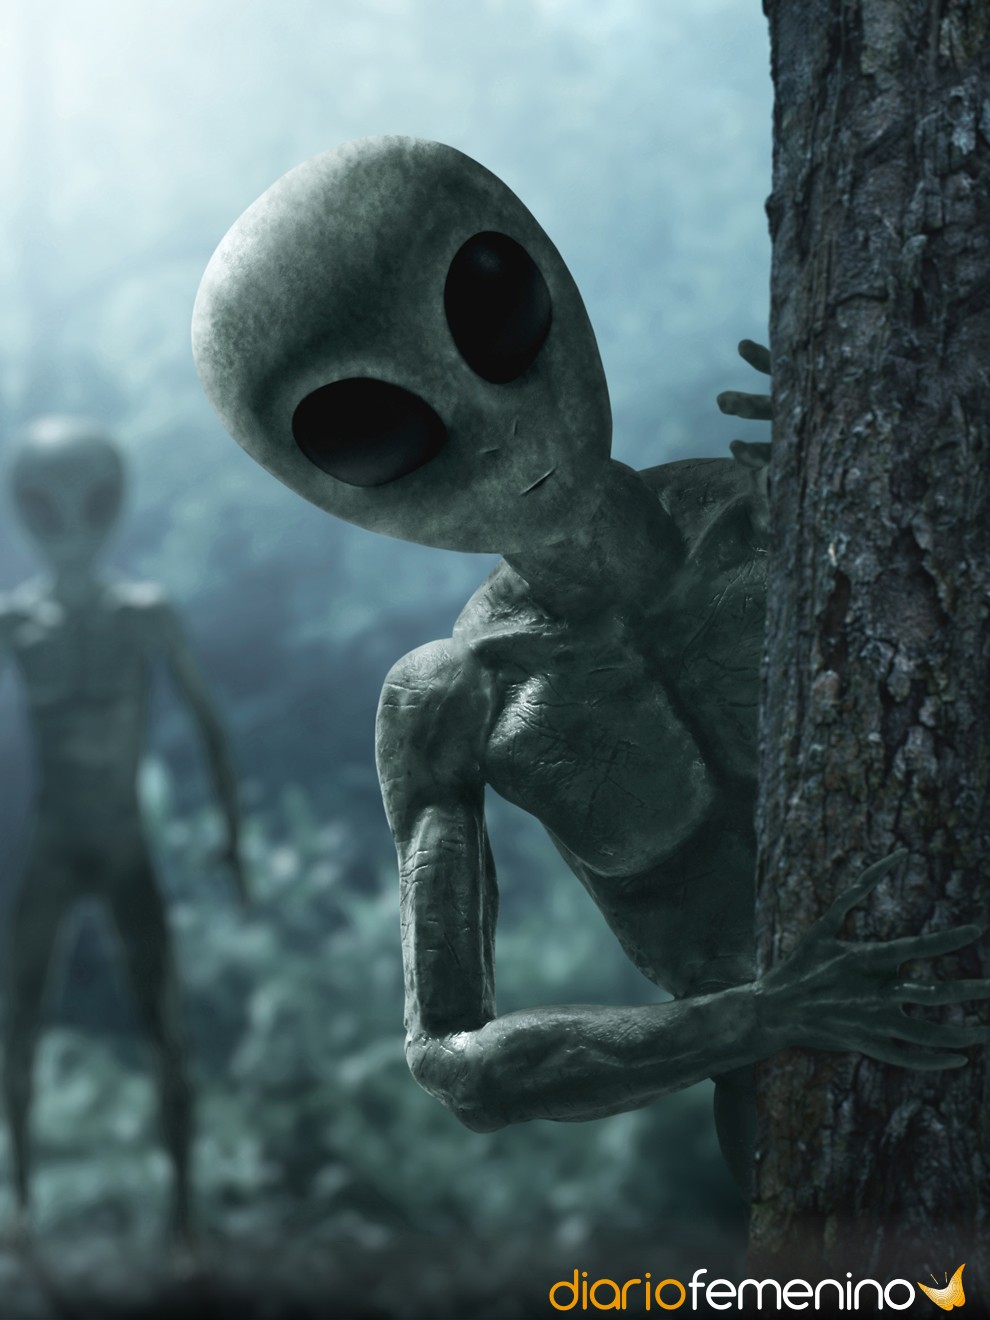 Soñar con extraterrestres: descubre tu relación con lo desconocido